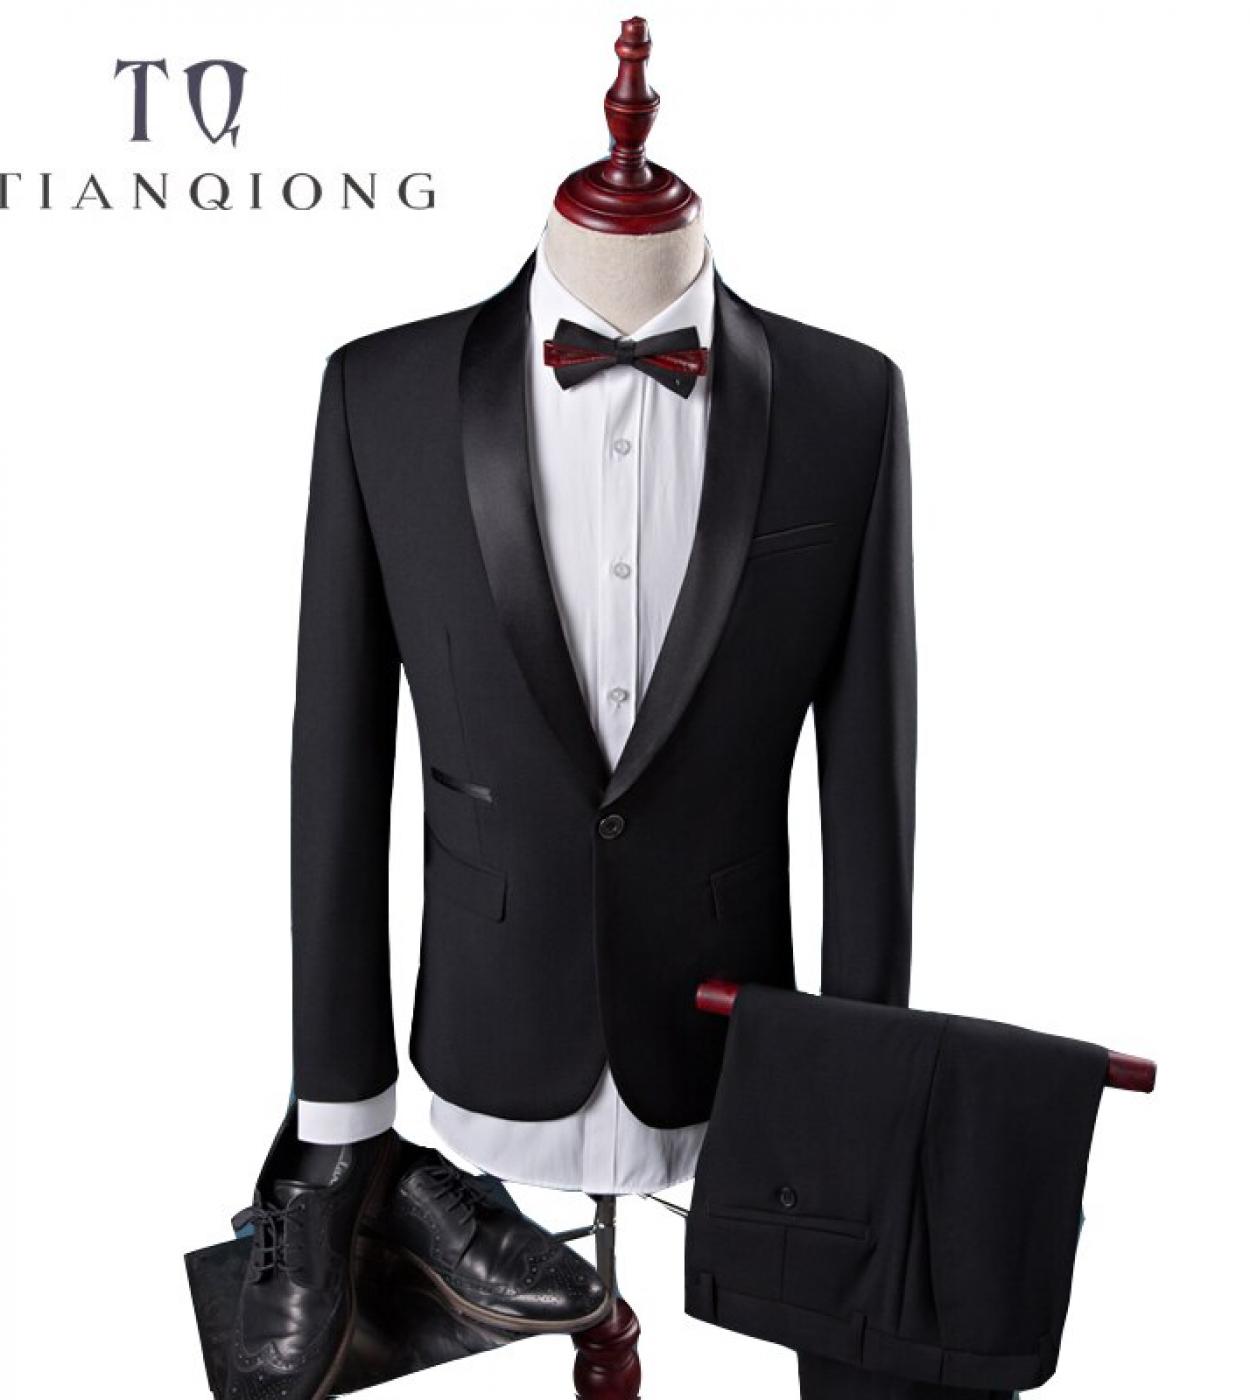 Tian Qiong Cheap New Coat Pant Designs High Quality Cotton Black Casual Suits Men,wedding Adress Casual Suit Men,plussiz